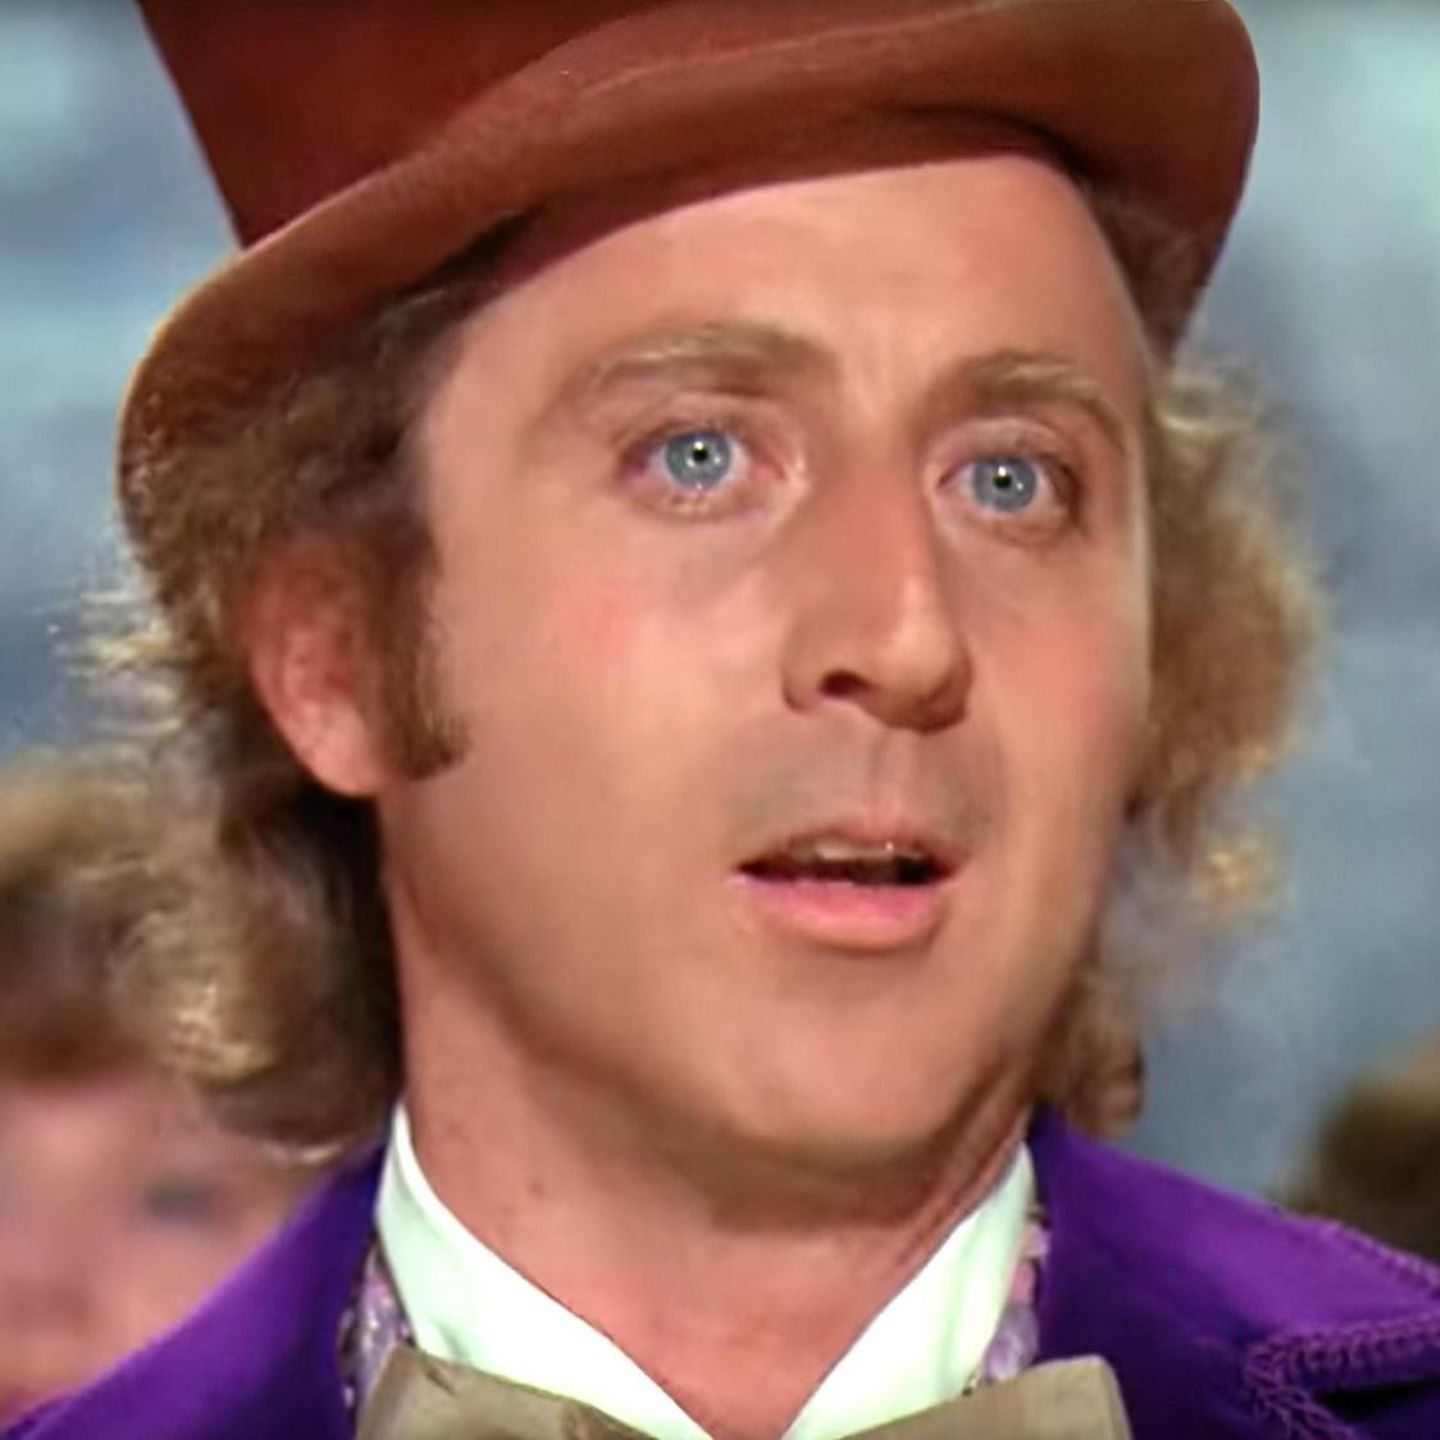 Der verstorbene Schauspieler Gene Wilder, den viele aus dem Film "Charlie und die Schokoladenfabrik" von 1971 kennen, sah damals einem heutigen Schauspieler recht ähnlich.